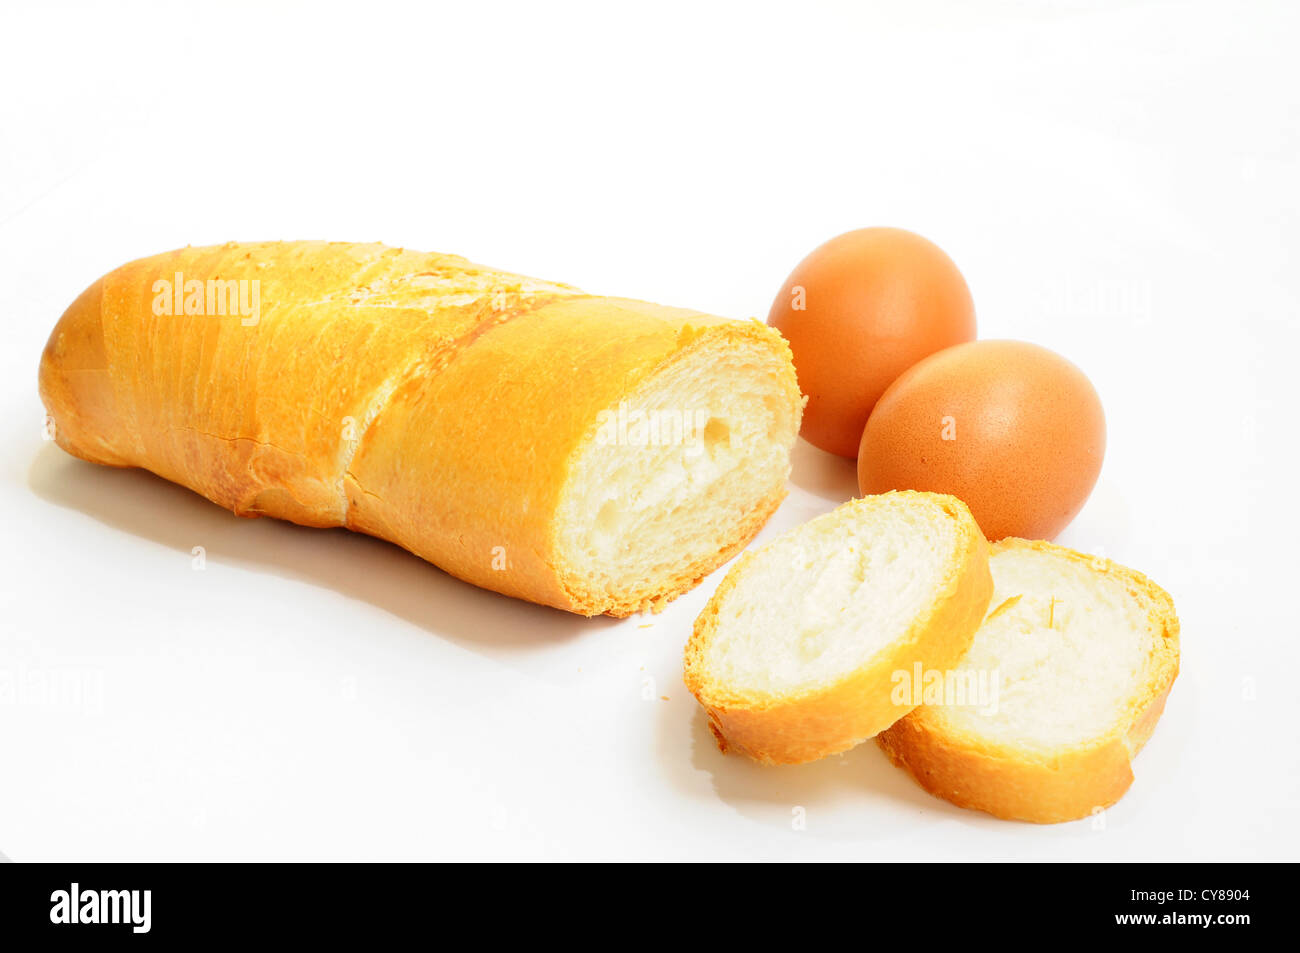 Brot essen französische Bäckerei gebacken weißes Brot Baguette braune frische Mehl lange Müsli Frühstück Kruste Gourmetmenü Ernährung essen Stockfoto